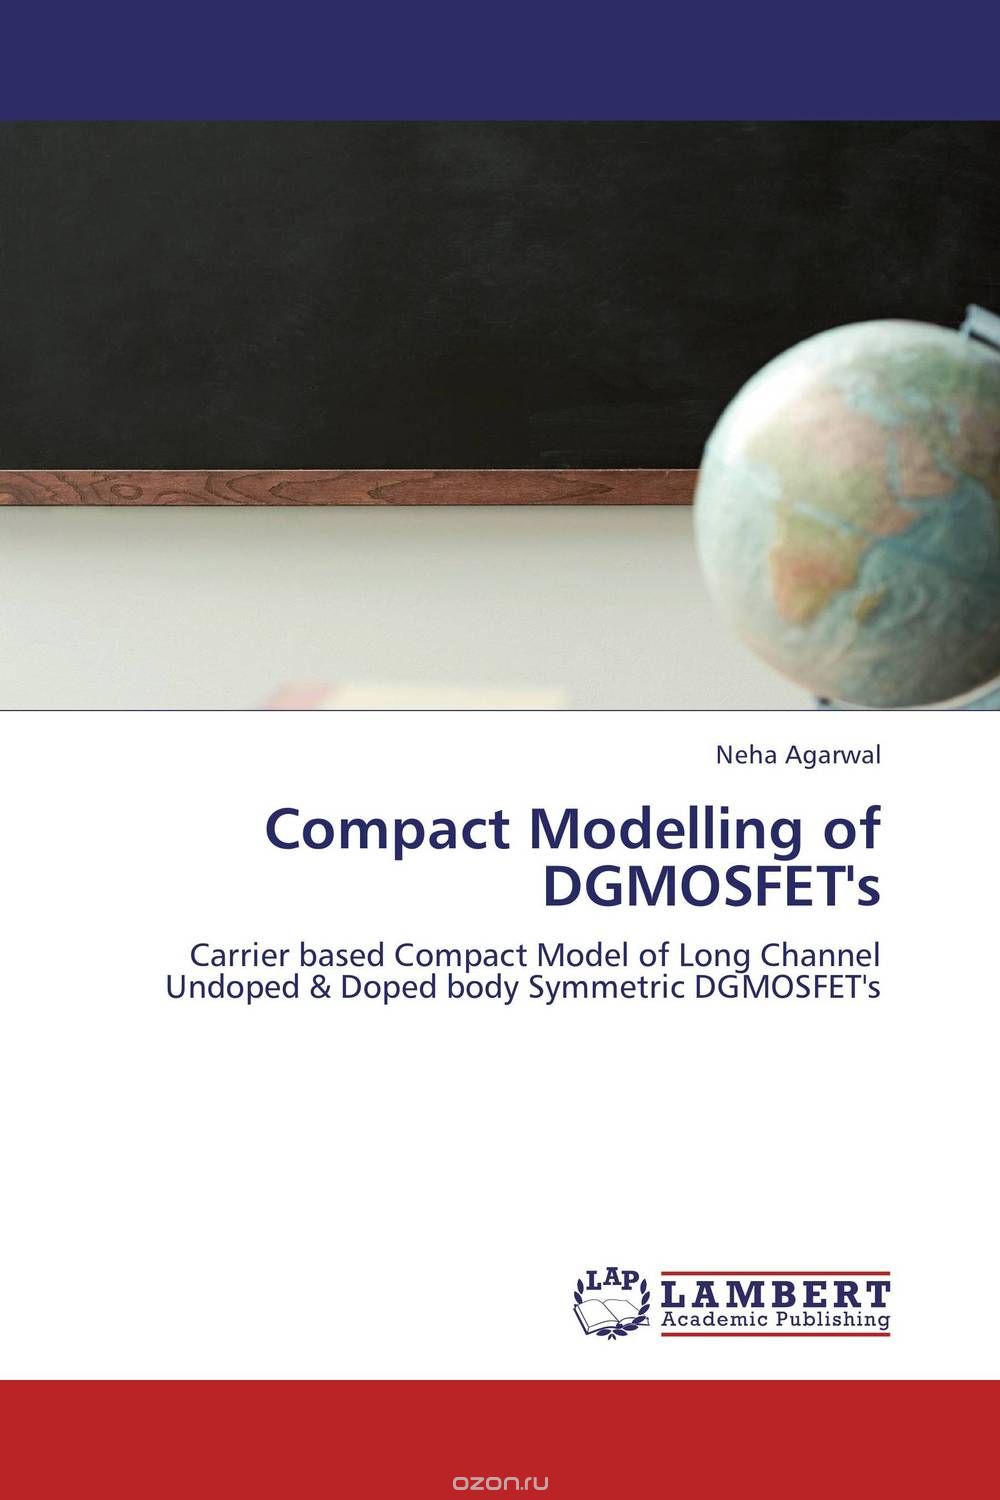 Скачать книгу "Compact Modelling of DGMOSFET's"